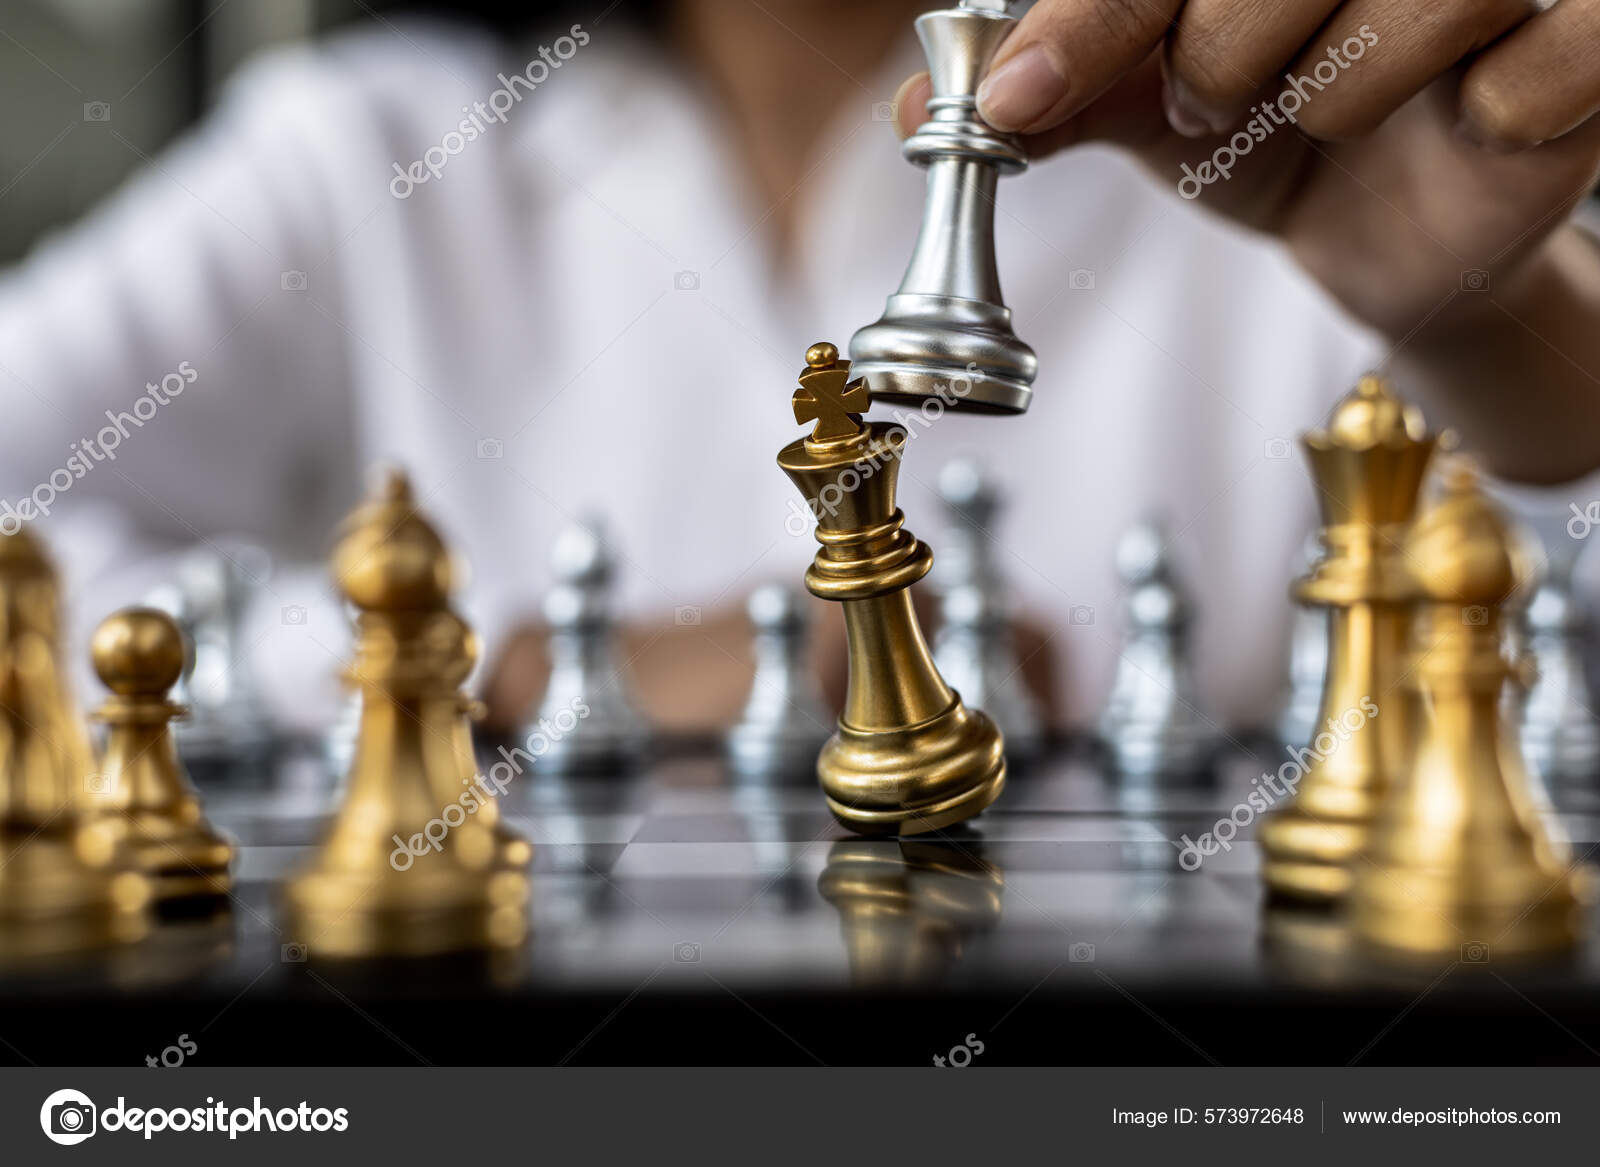 Pessoa Jogando Jogo De Tabuleiro De Xadrez, Homem De Negócios Conceito  Imagem Segurando Peças De Xadrez Como A Concorrência De Negócios E Gestão  De Risco, Planejamento De Estratégias De Negócios Para Derrotar